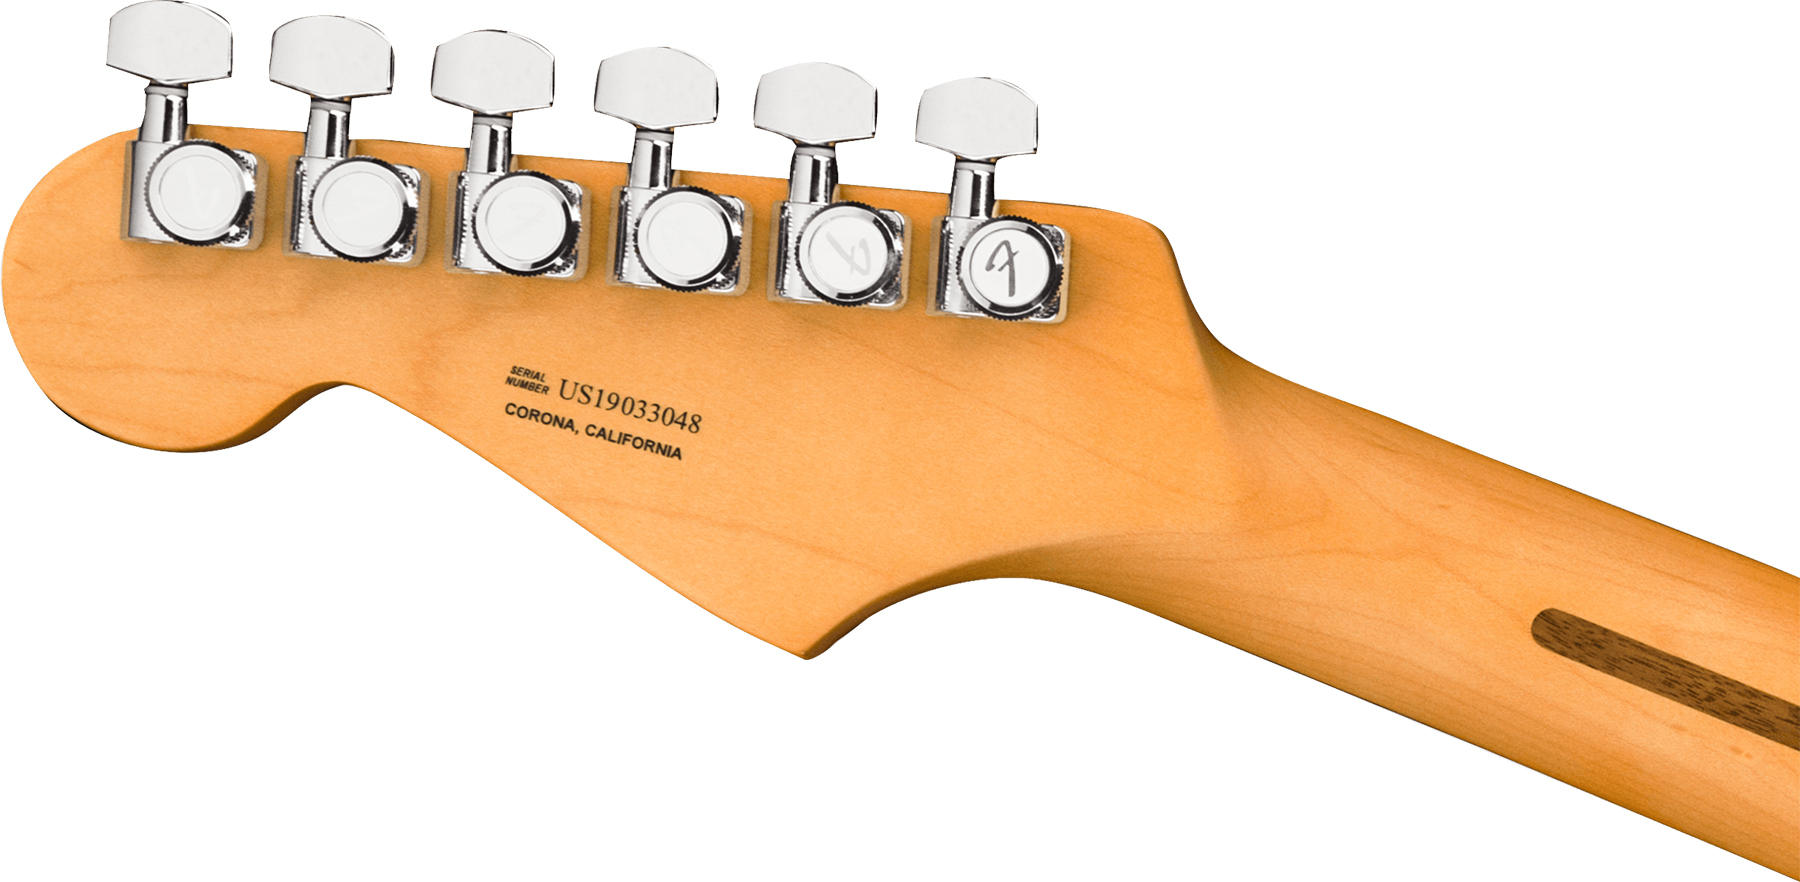 Fender Strat American Ultra Hss 2019 Usa Rw - Ultraburst - E-Gitarre in Str-Form - Variation 3